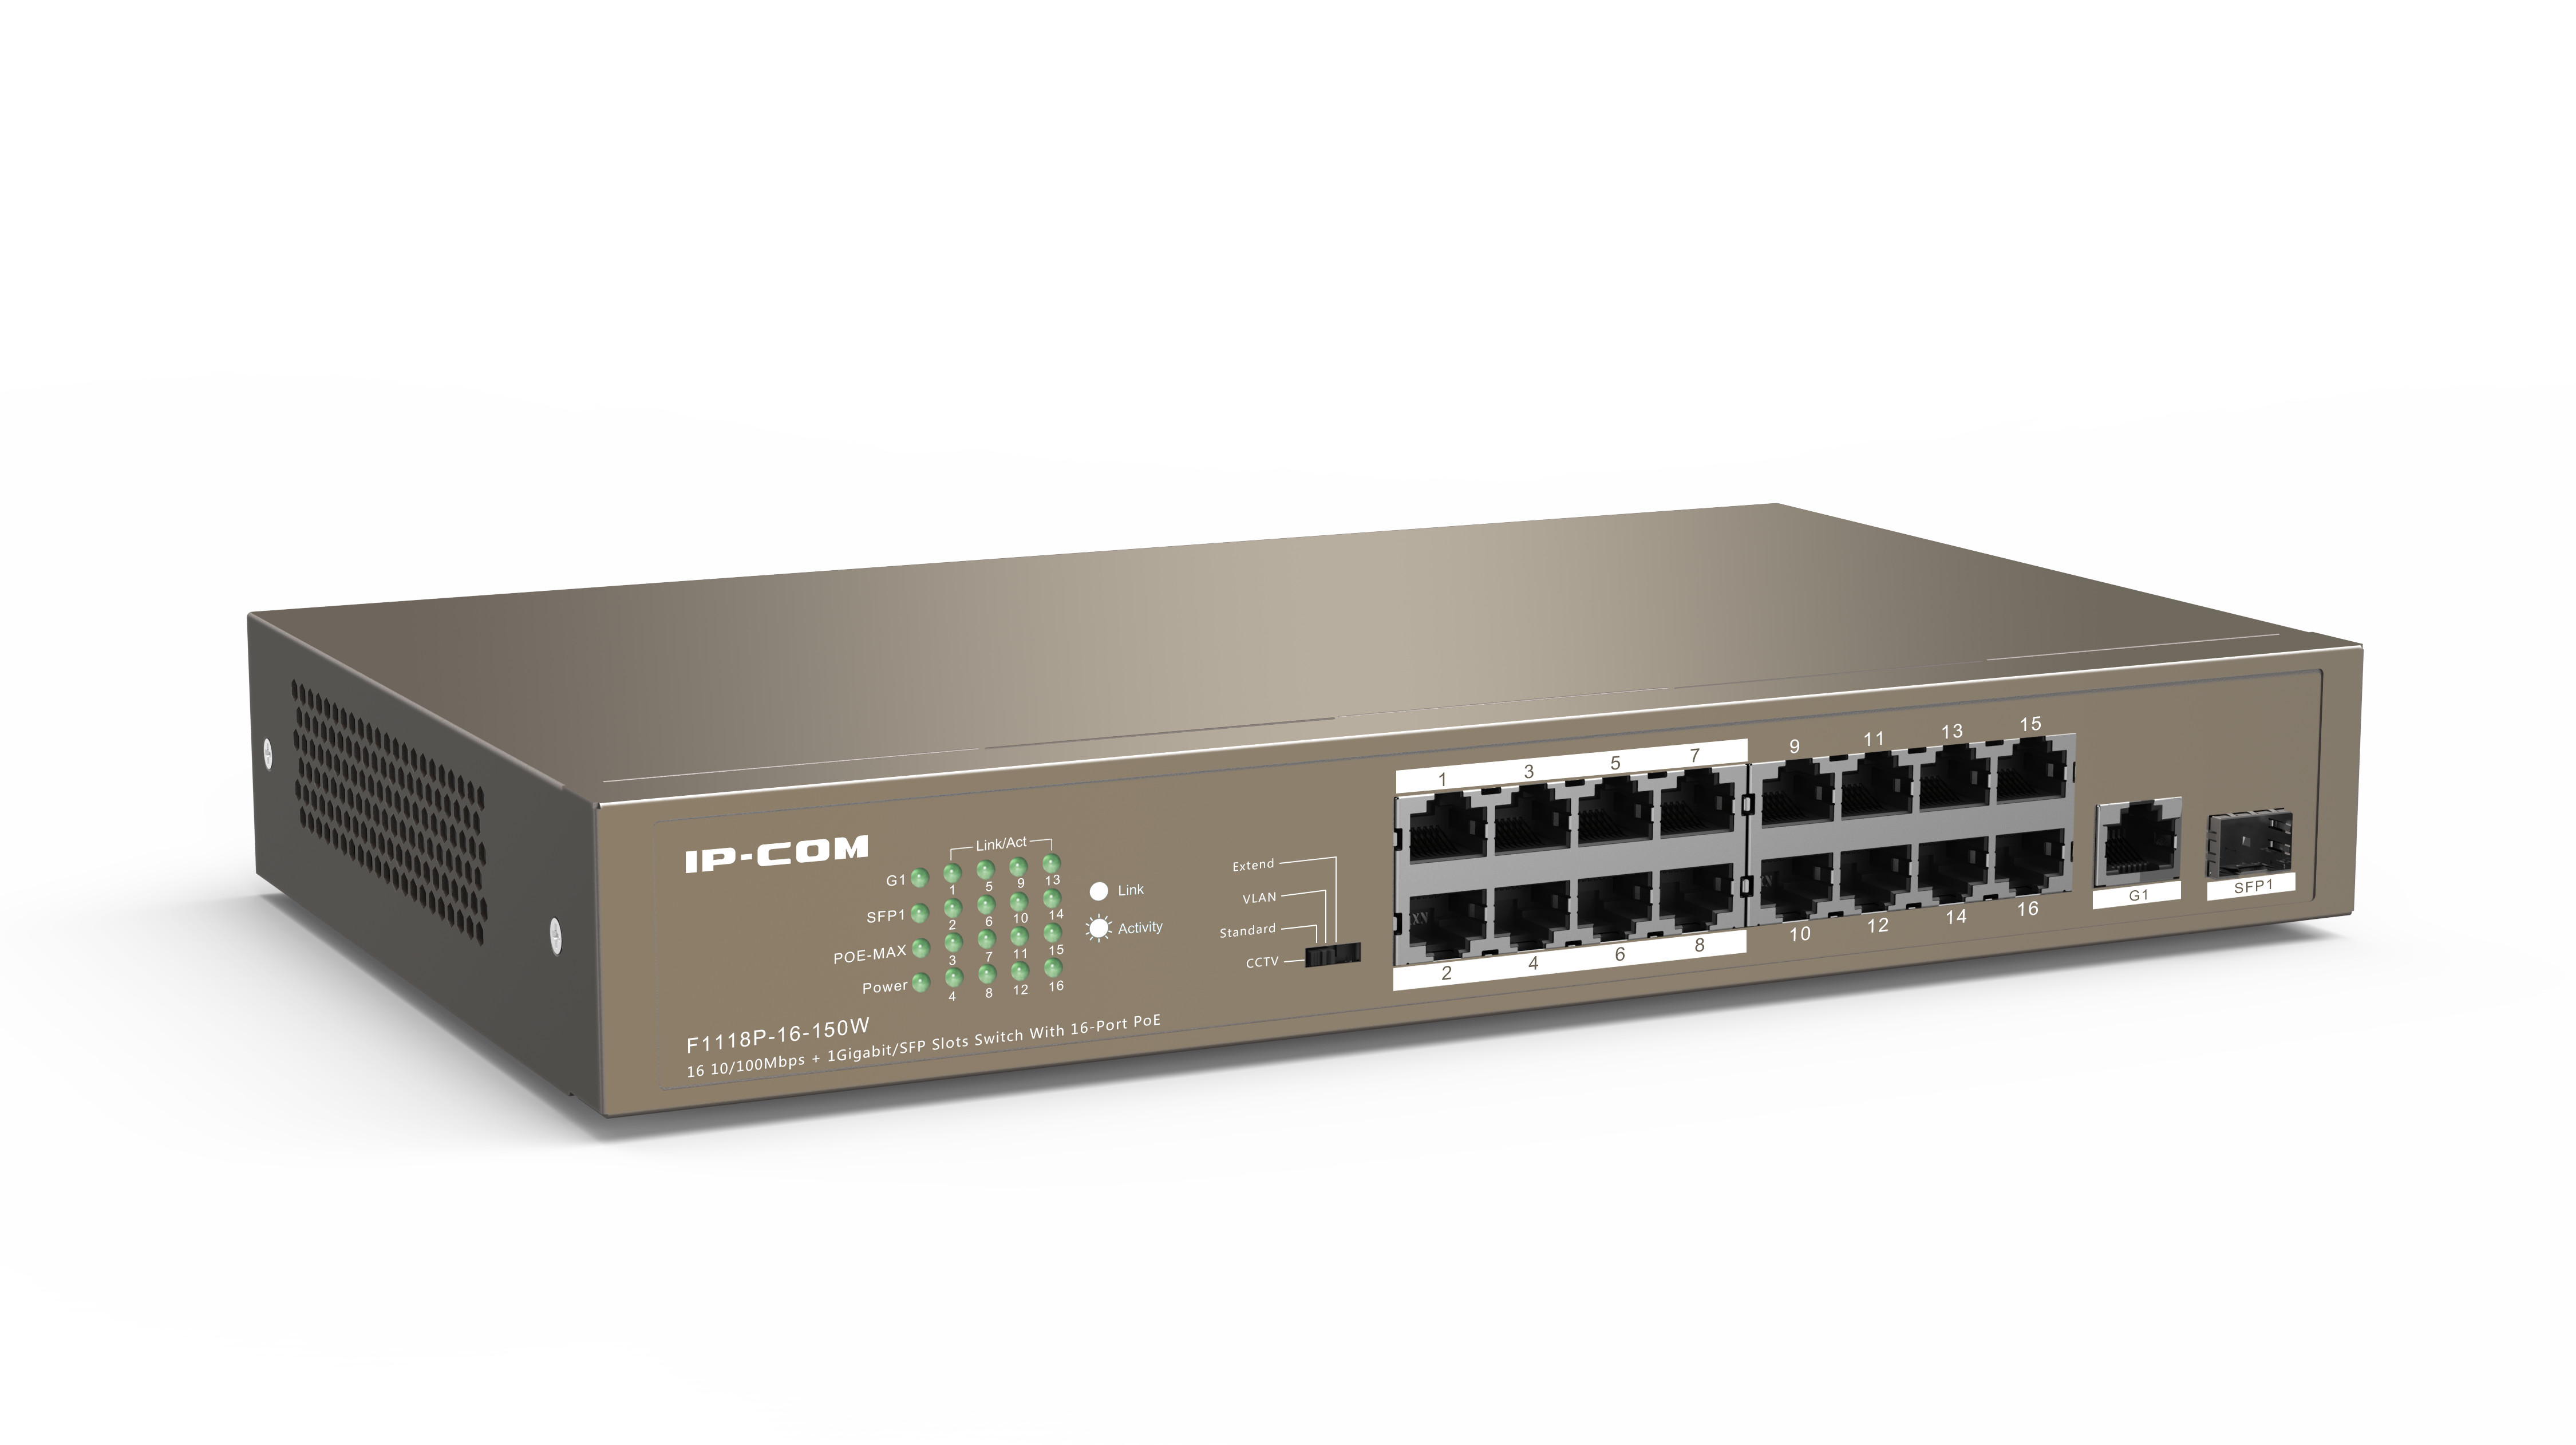 Switch 16 port PoE 10/100 Mbps IP-COM F1118P 150W, Comb 1 cổng SFP+ 1 cổng Uplink Gigabit - Hàng chính hãng